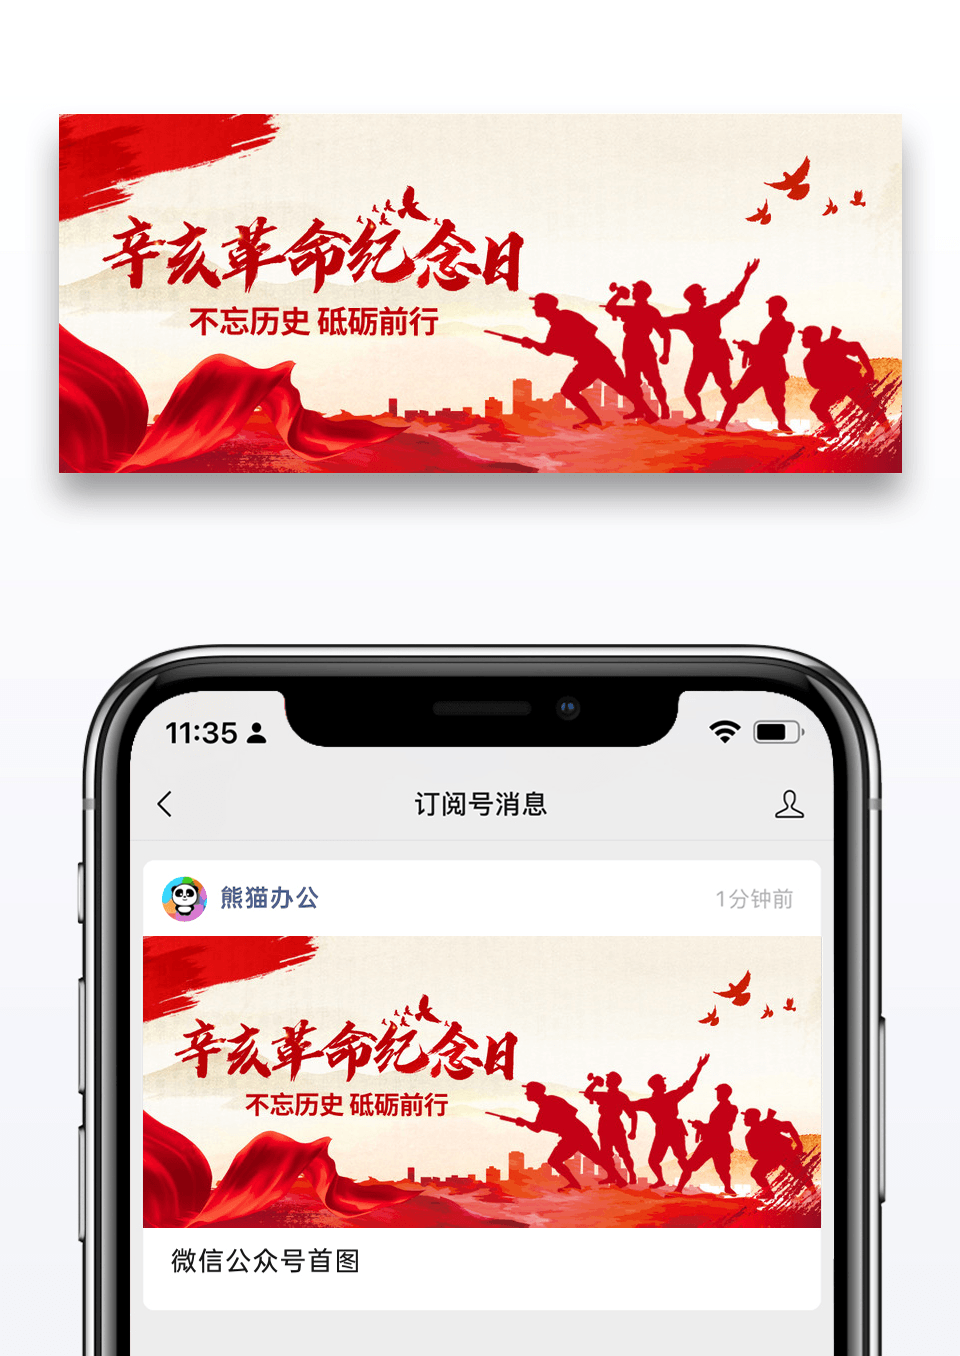 简约时尚红色辛亥革命纪念日微信公众号封面图片